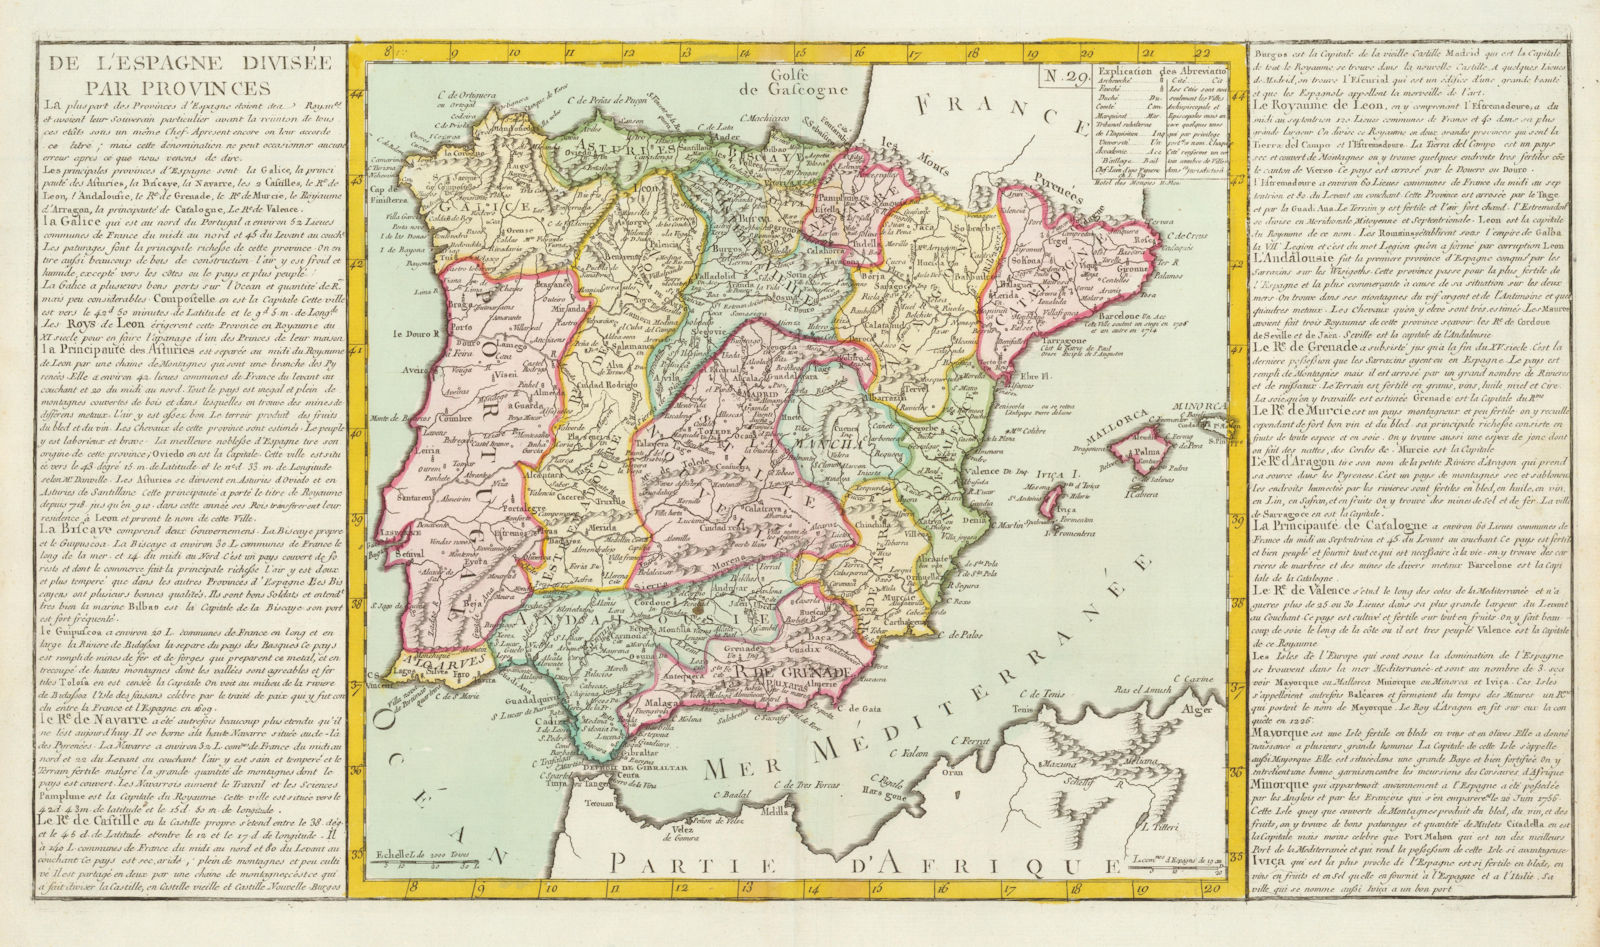 'De L'Espagne Divisée par Provinces' by J-B.L. Clouet. Spain Iberia 1787 map